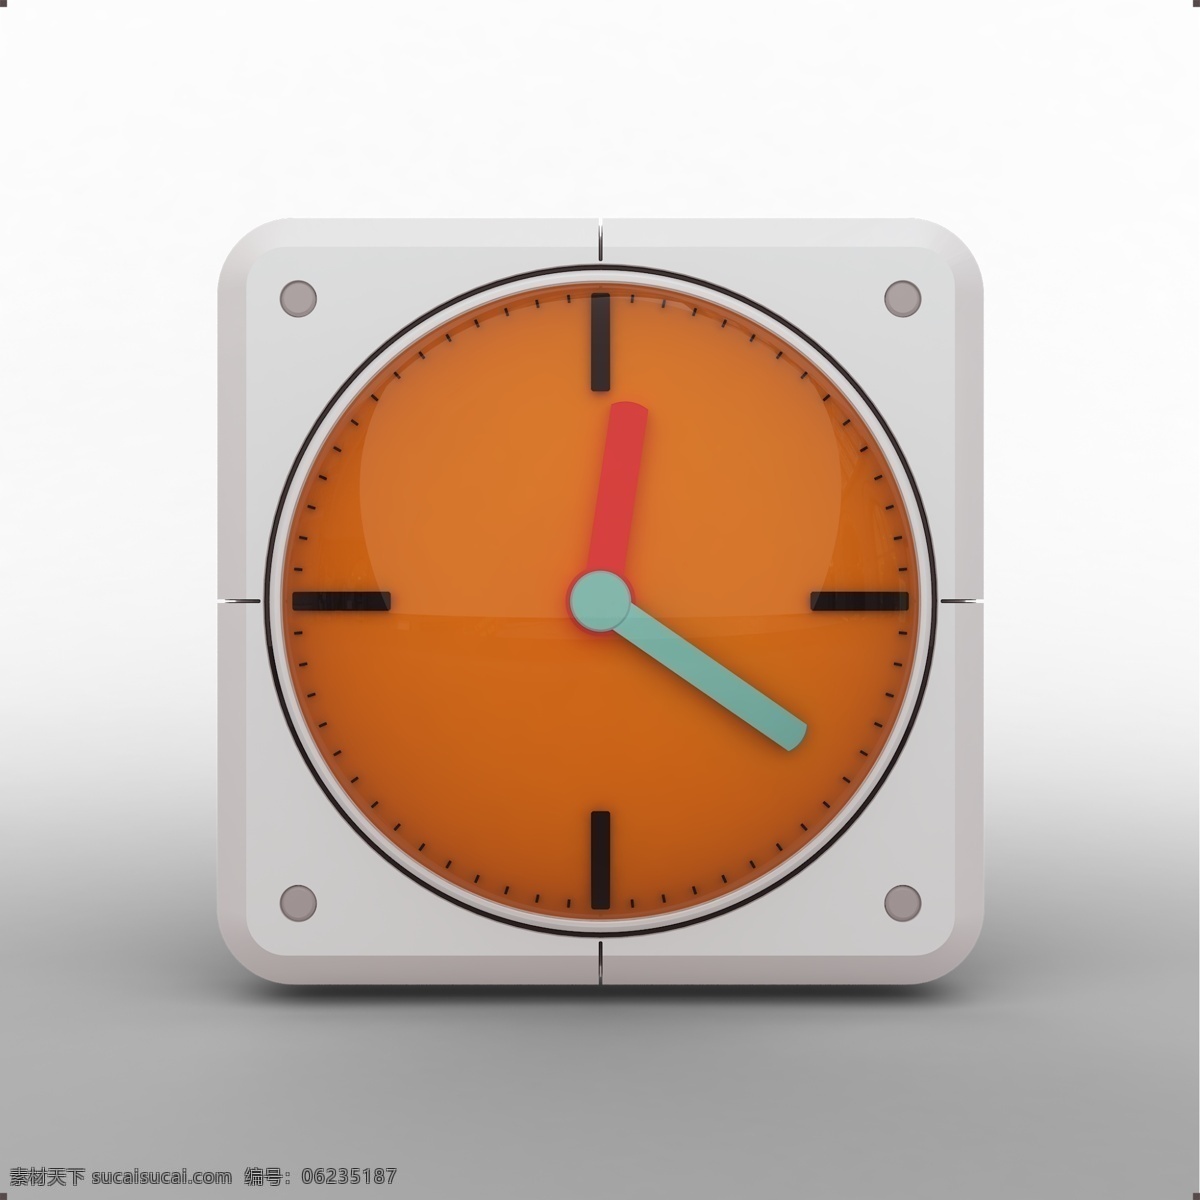 三维 立体 时钟 icon 时间 秒表 计时器 闹钟 按钮 图标 app 立体图标 三维图标 系列图标 系统应用 移动app 主题